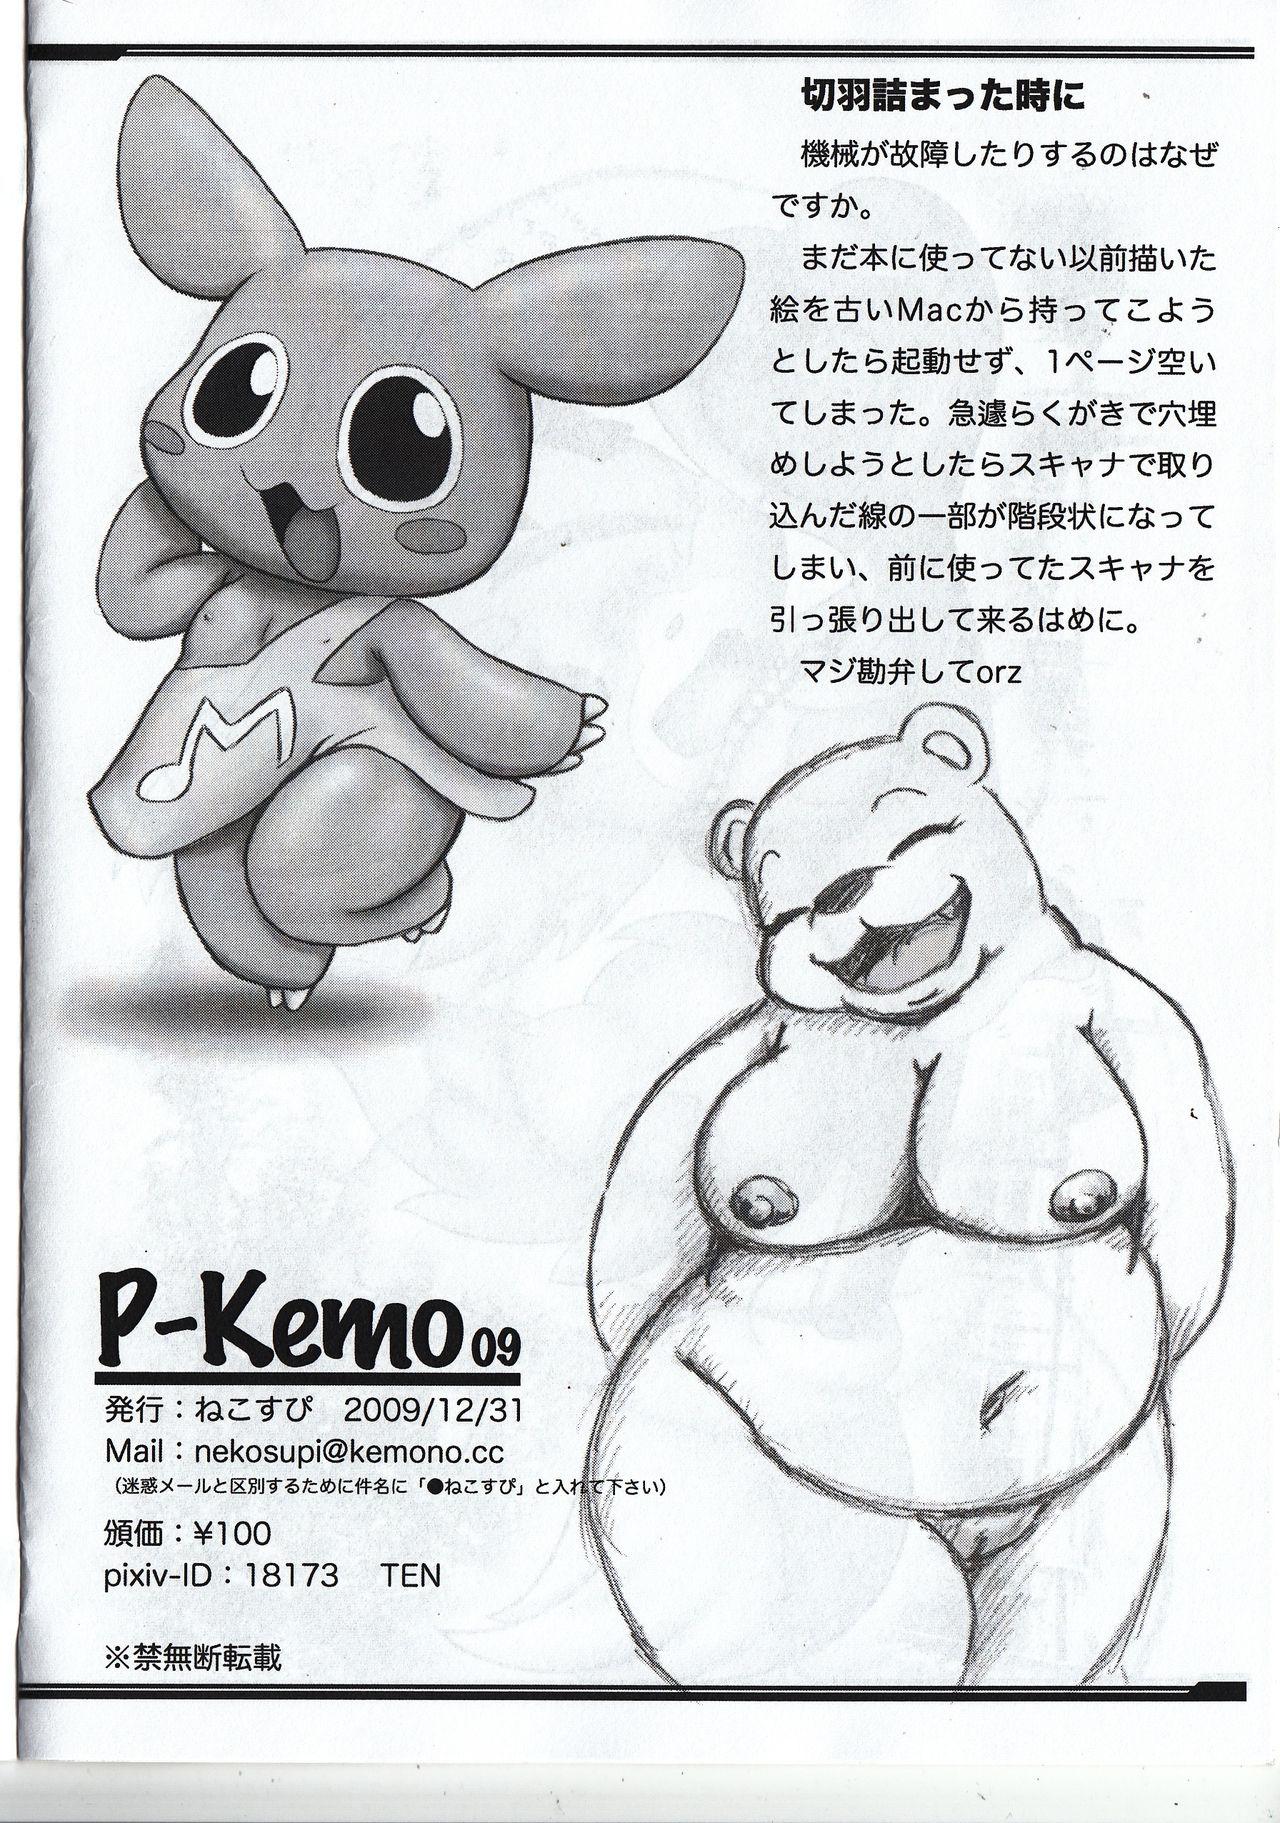 Dildo P-Kemo09 - Pokemon Kirby Animal crossing Suruba - Page 13